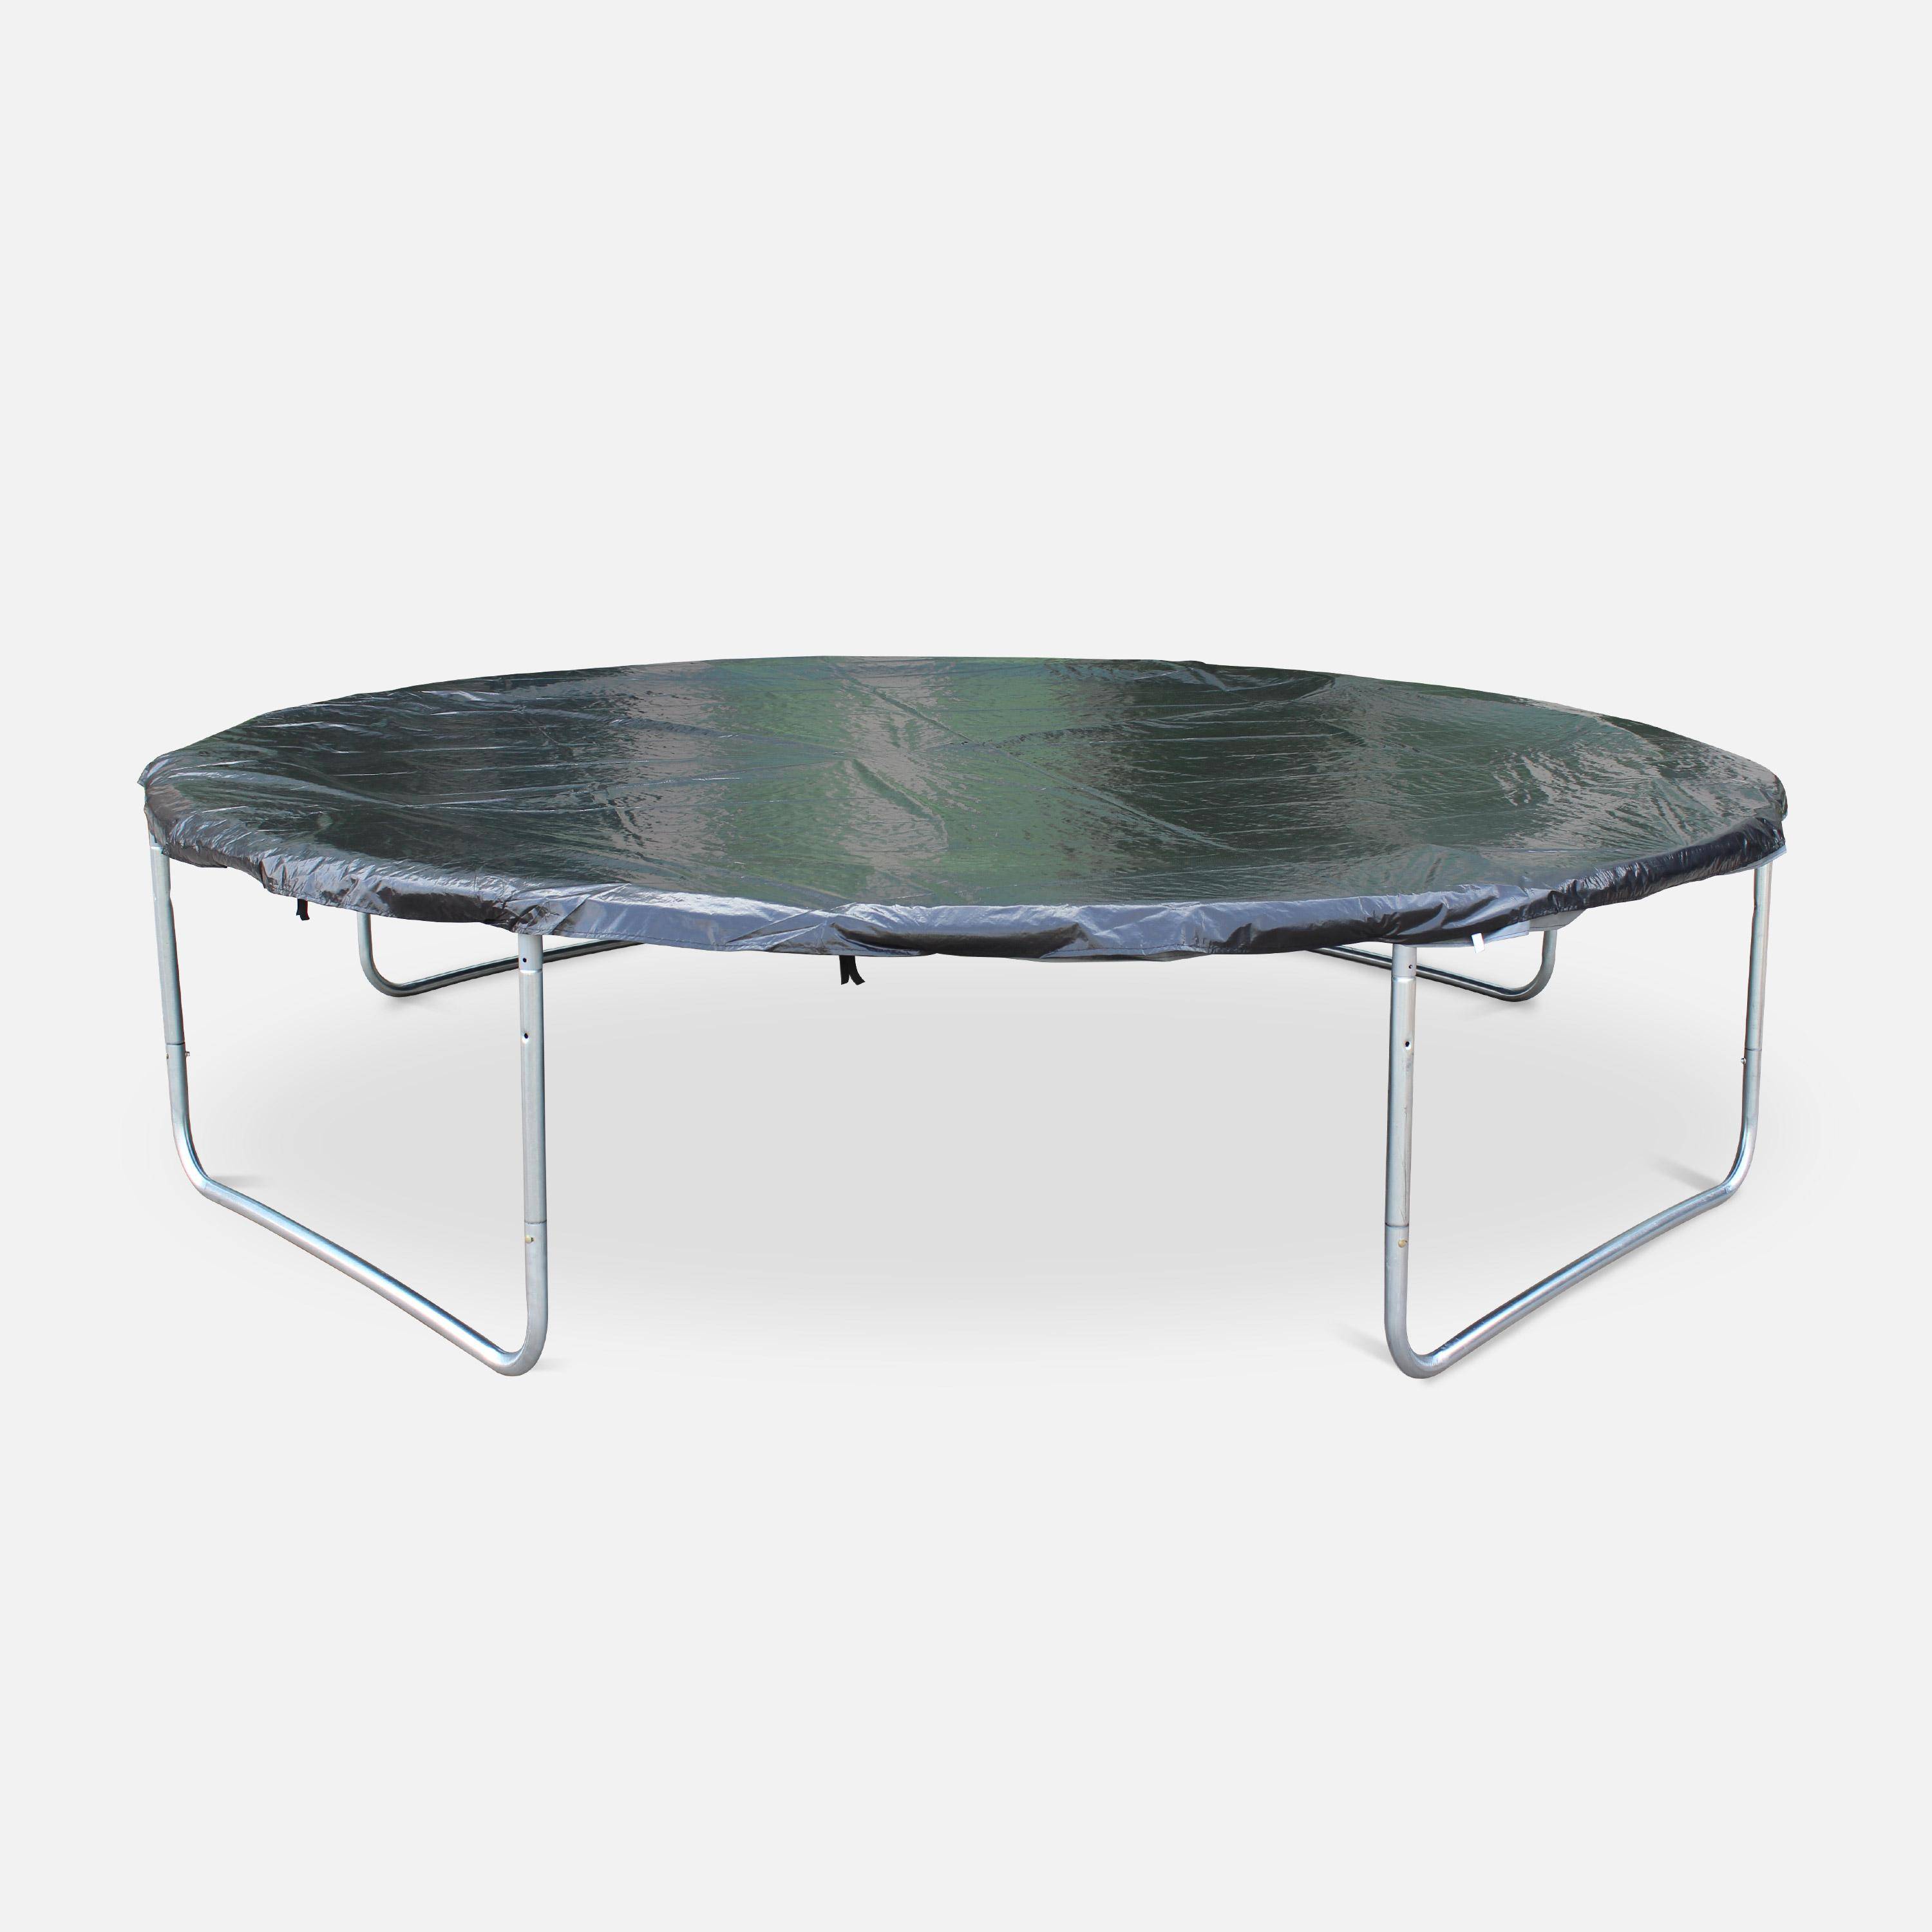 Cama elástica redonda 370 cm gris con red de seguridad interna - Saturne INNER XXL- Nuevo modelo - cama elástica de jardín 3,70 m 370 cm | Calidad PRO. | Normas de la UE. Photo3